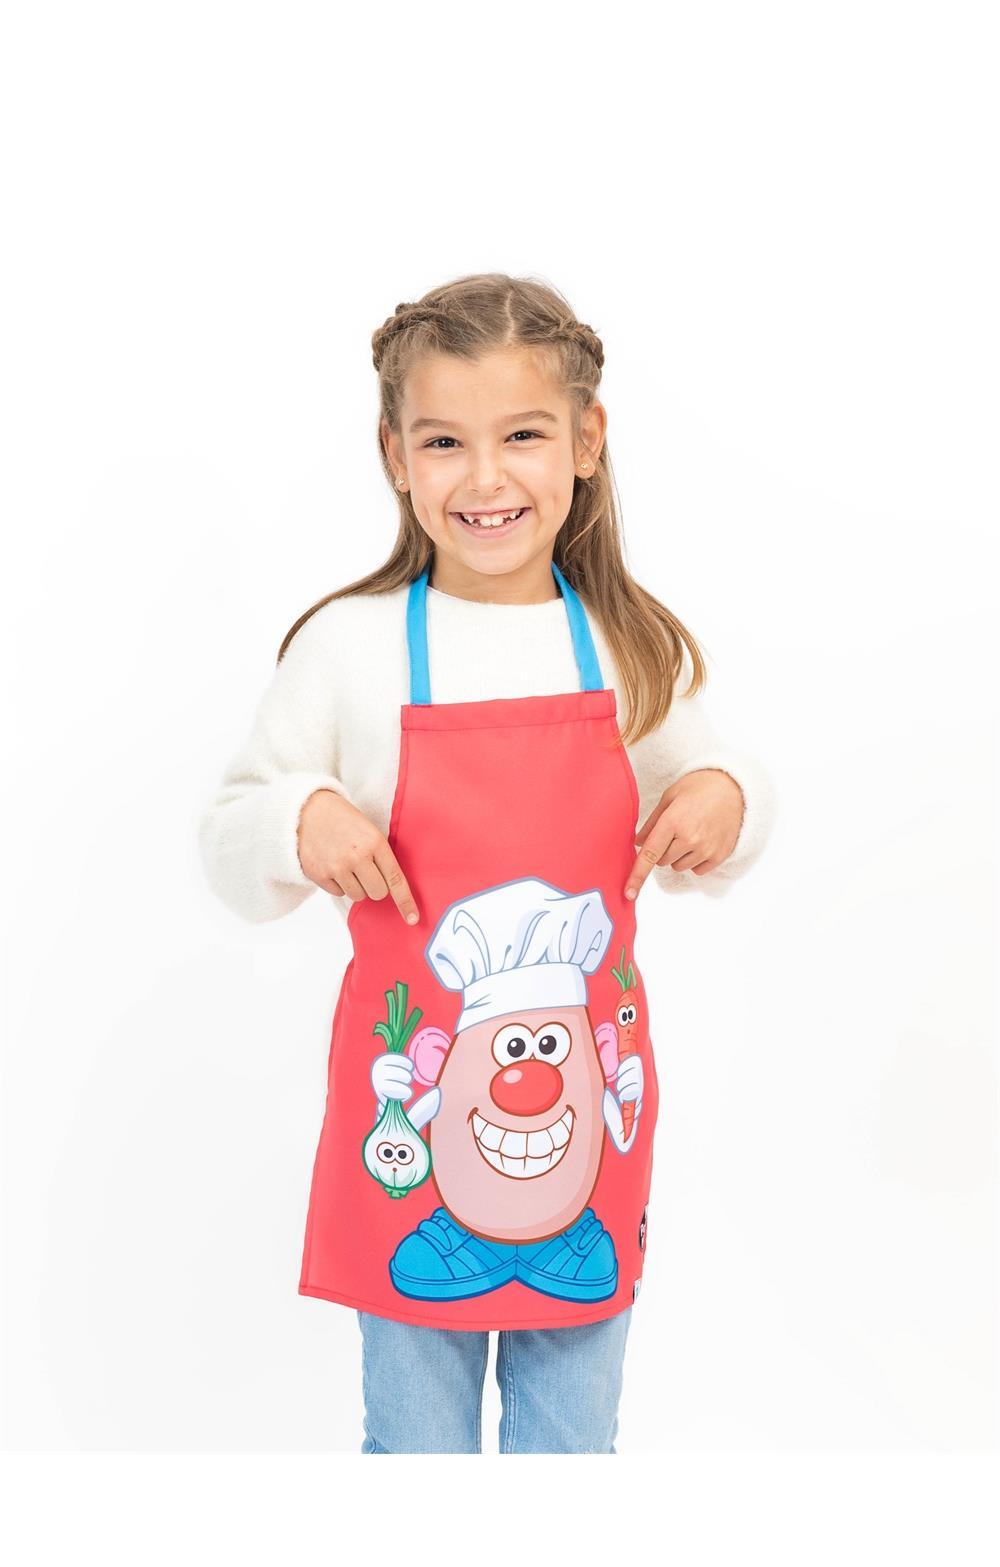 Comprar Delantal Infantil Potato Chef online